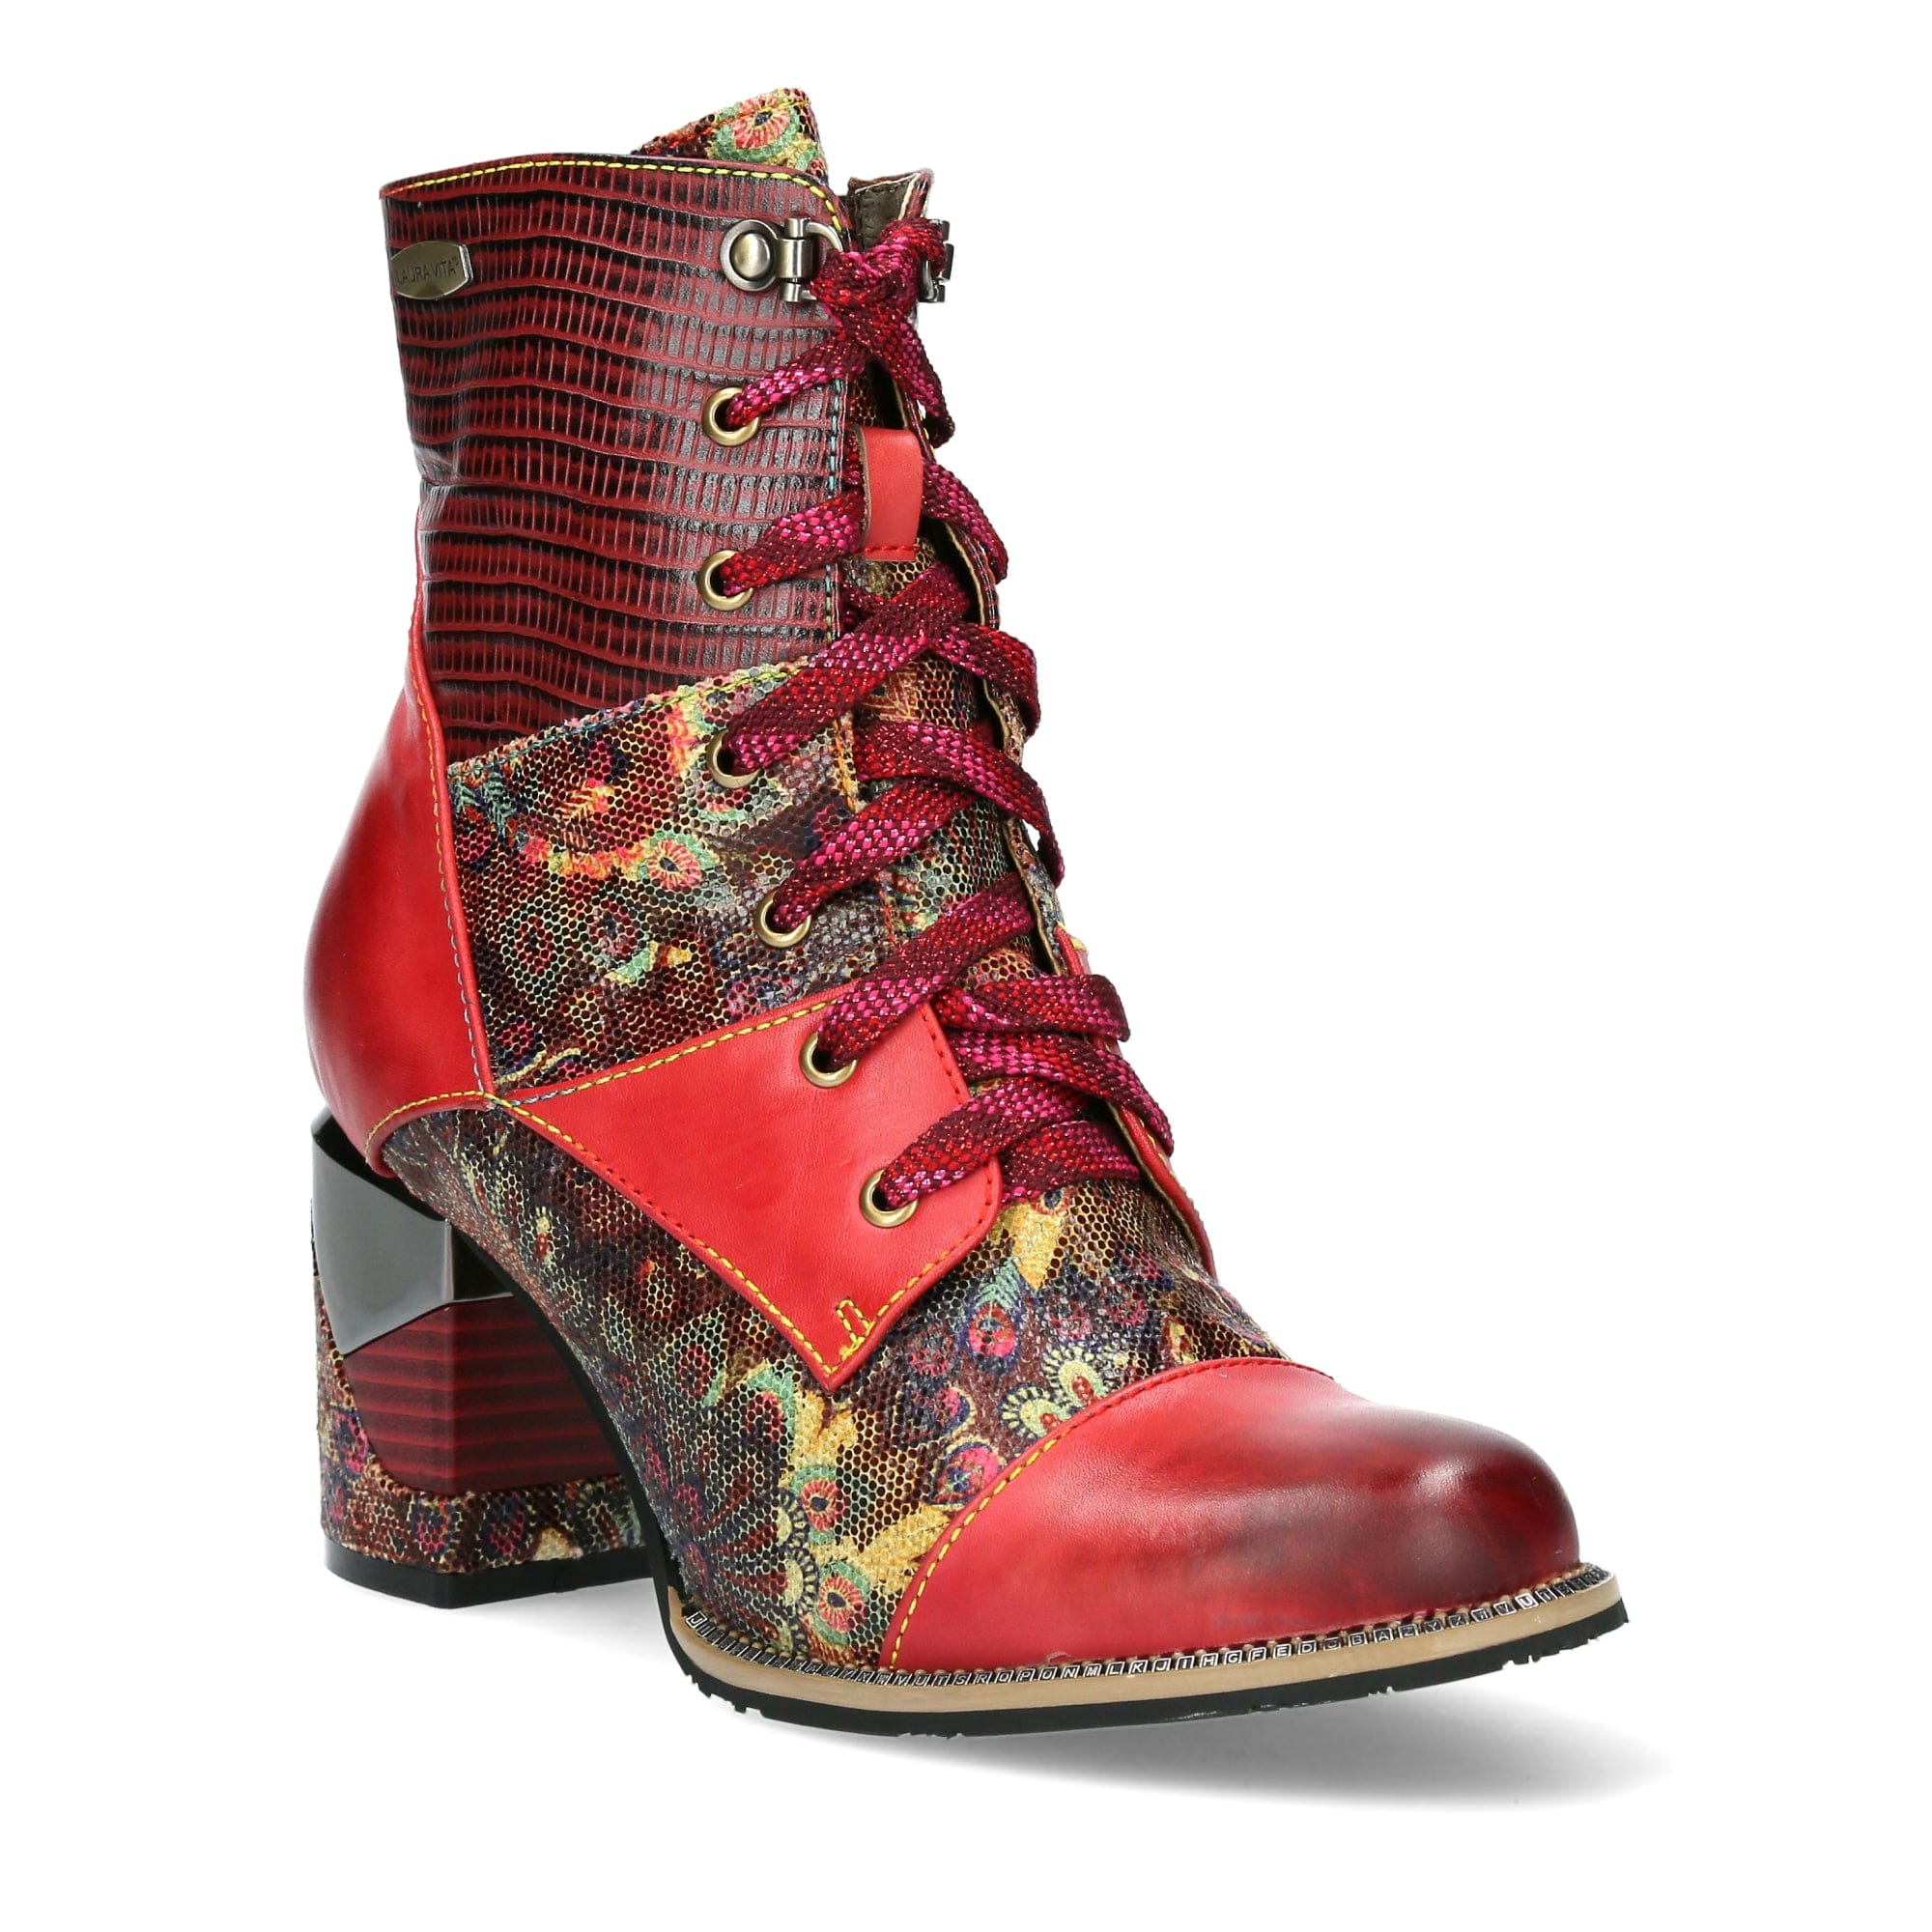 Shoe MAEVAO 02 - Boots